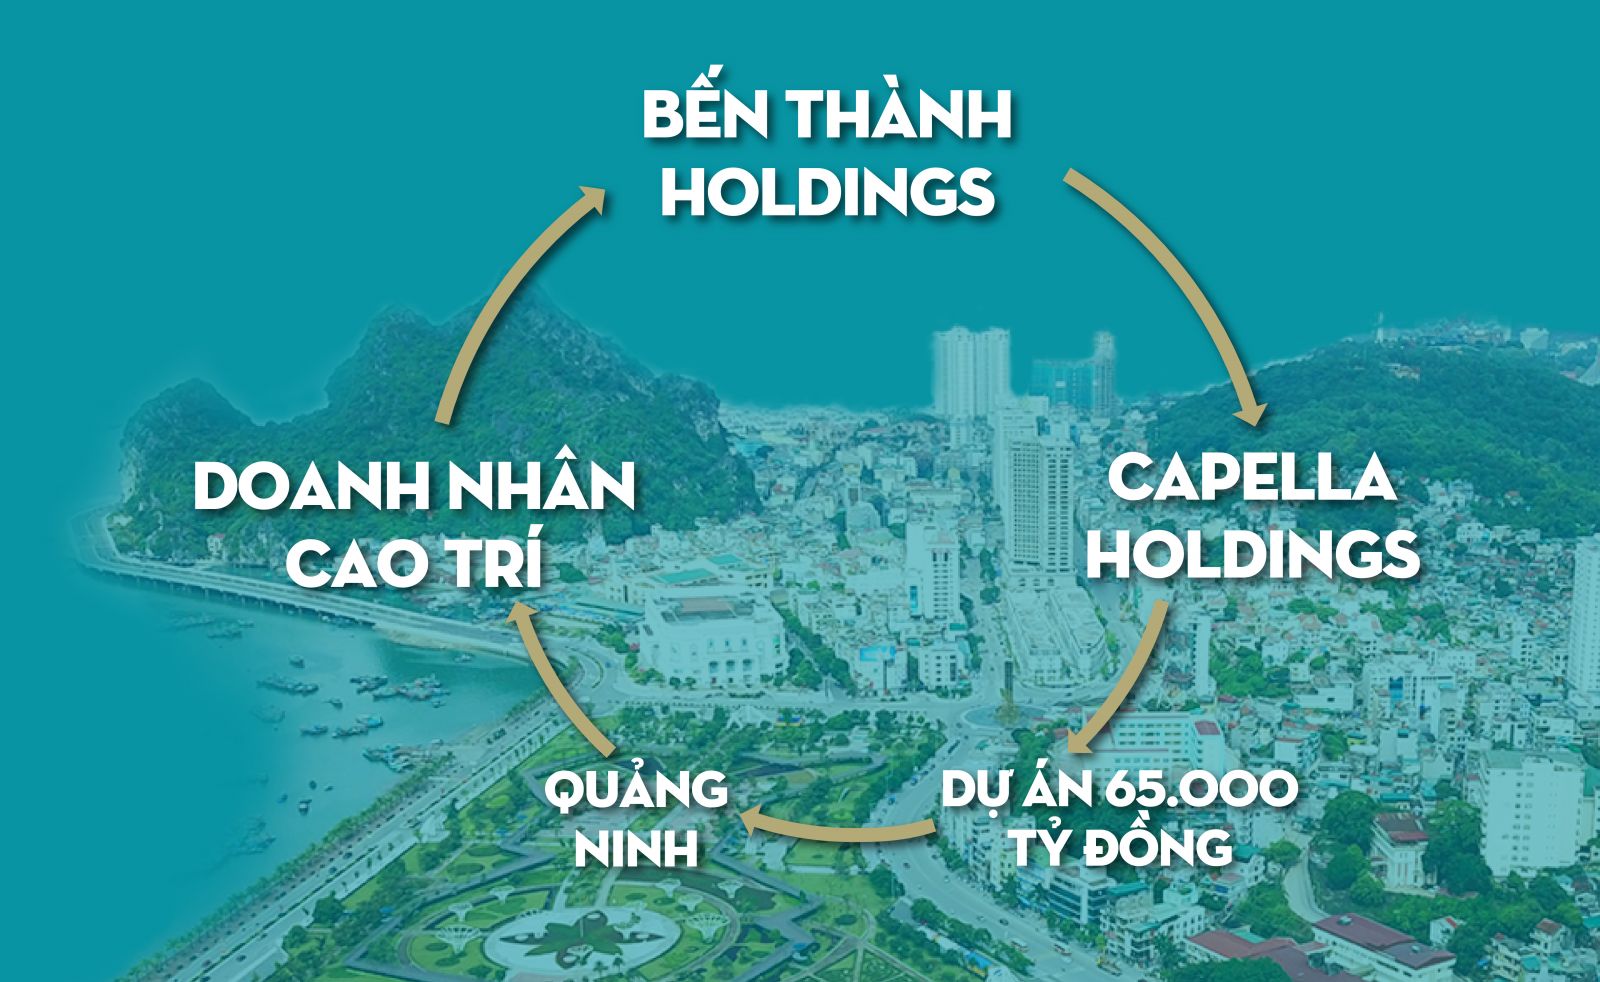 Trùm Sài Gòn mở rộng “kinh đô“ với dự án 65.000 tỷ đồng tại Quảng Ninh?